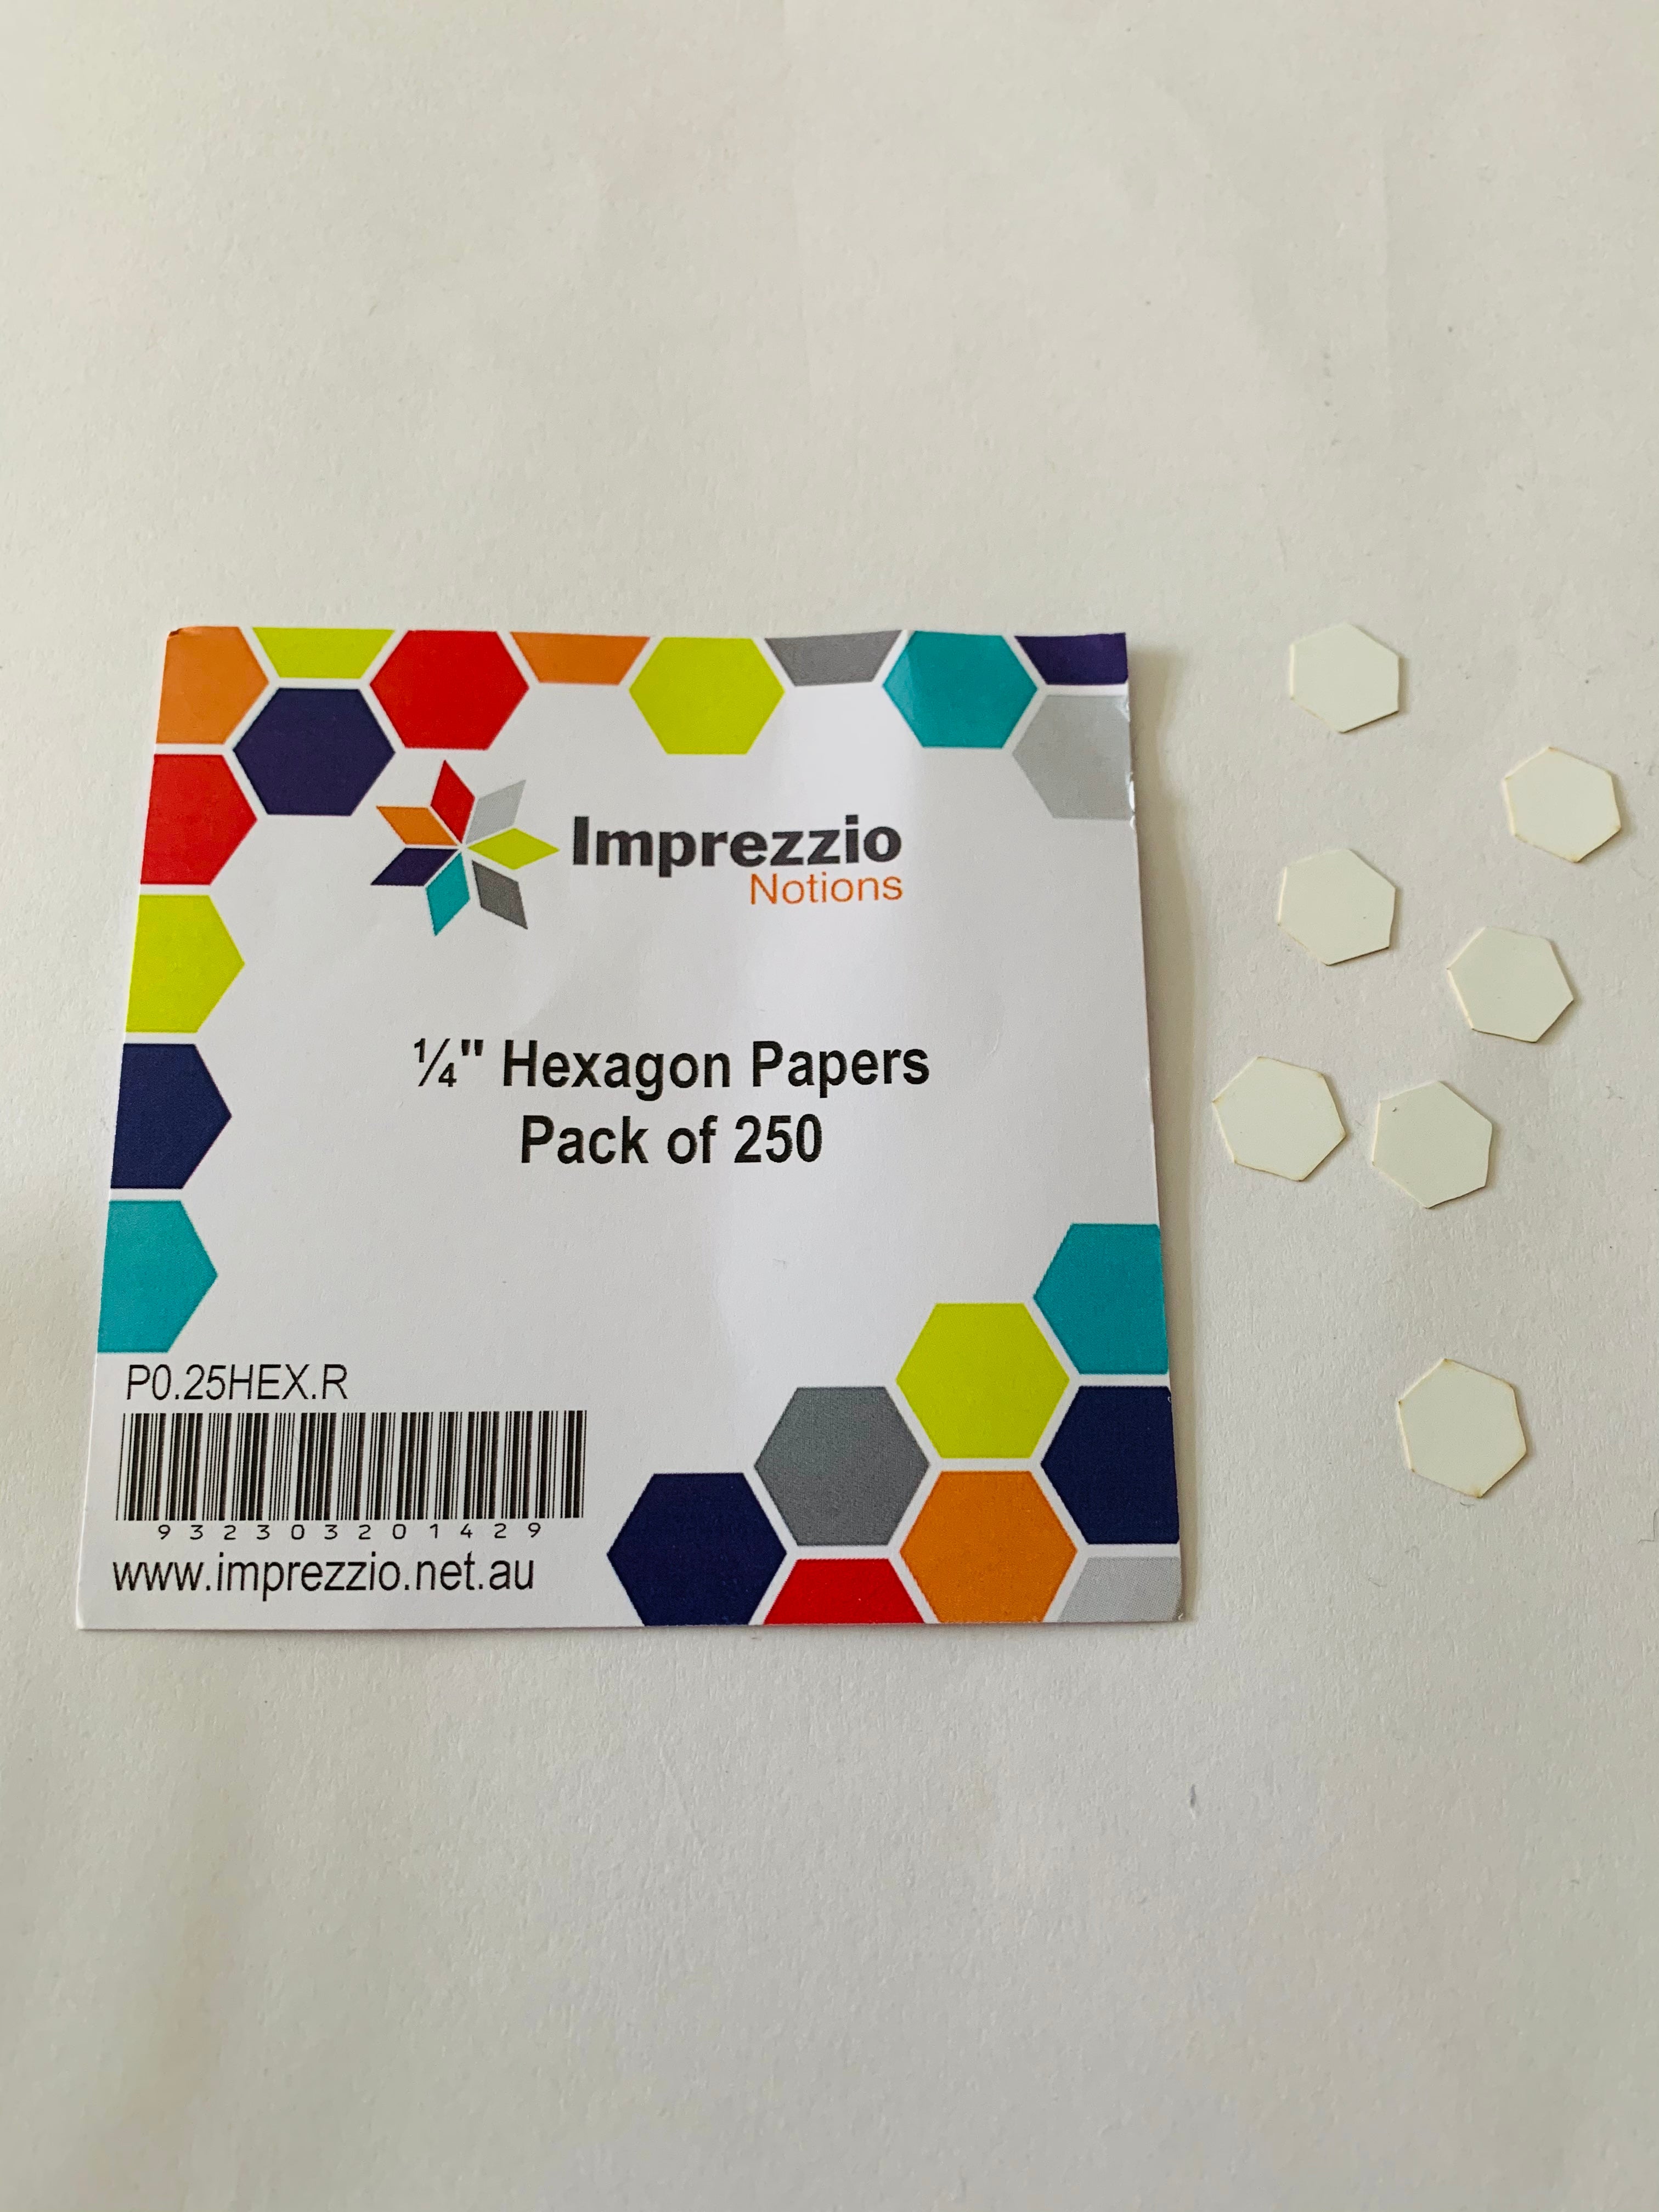 Imprezzio 1/4” hexagon papers